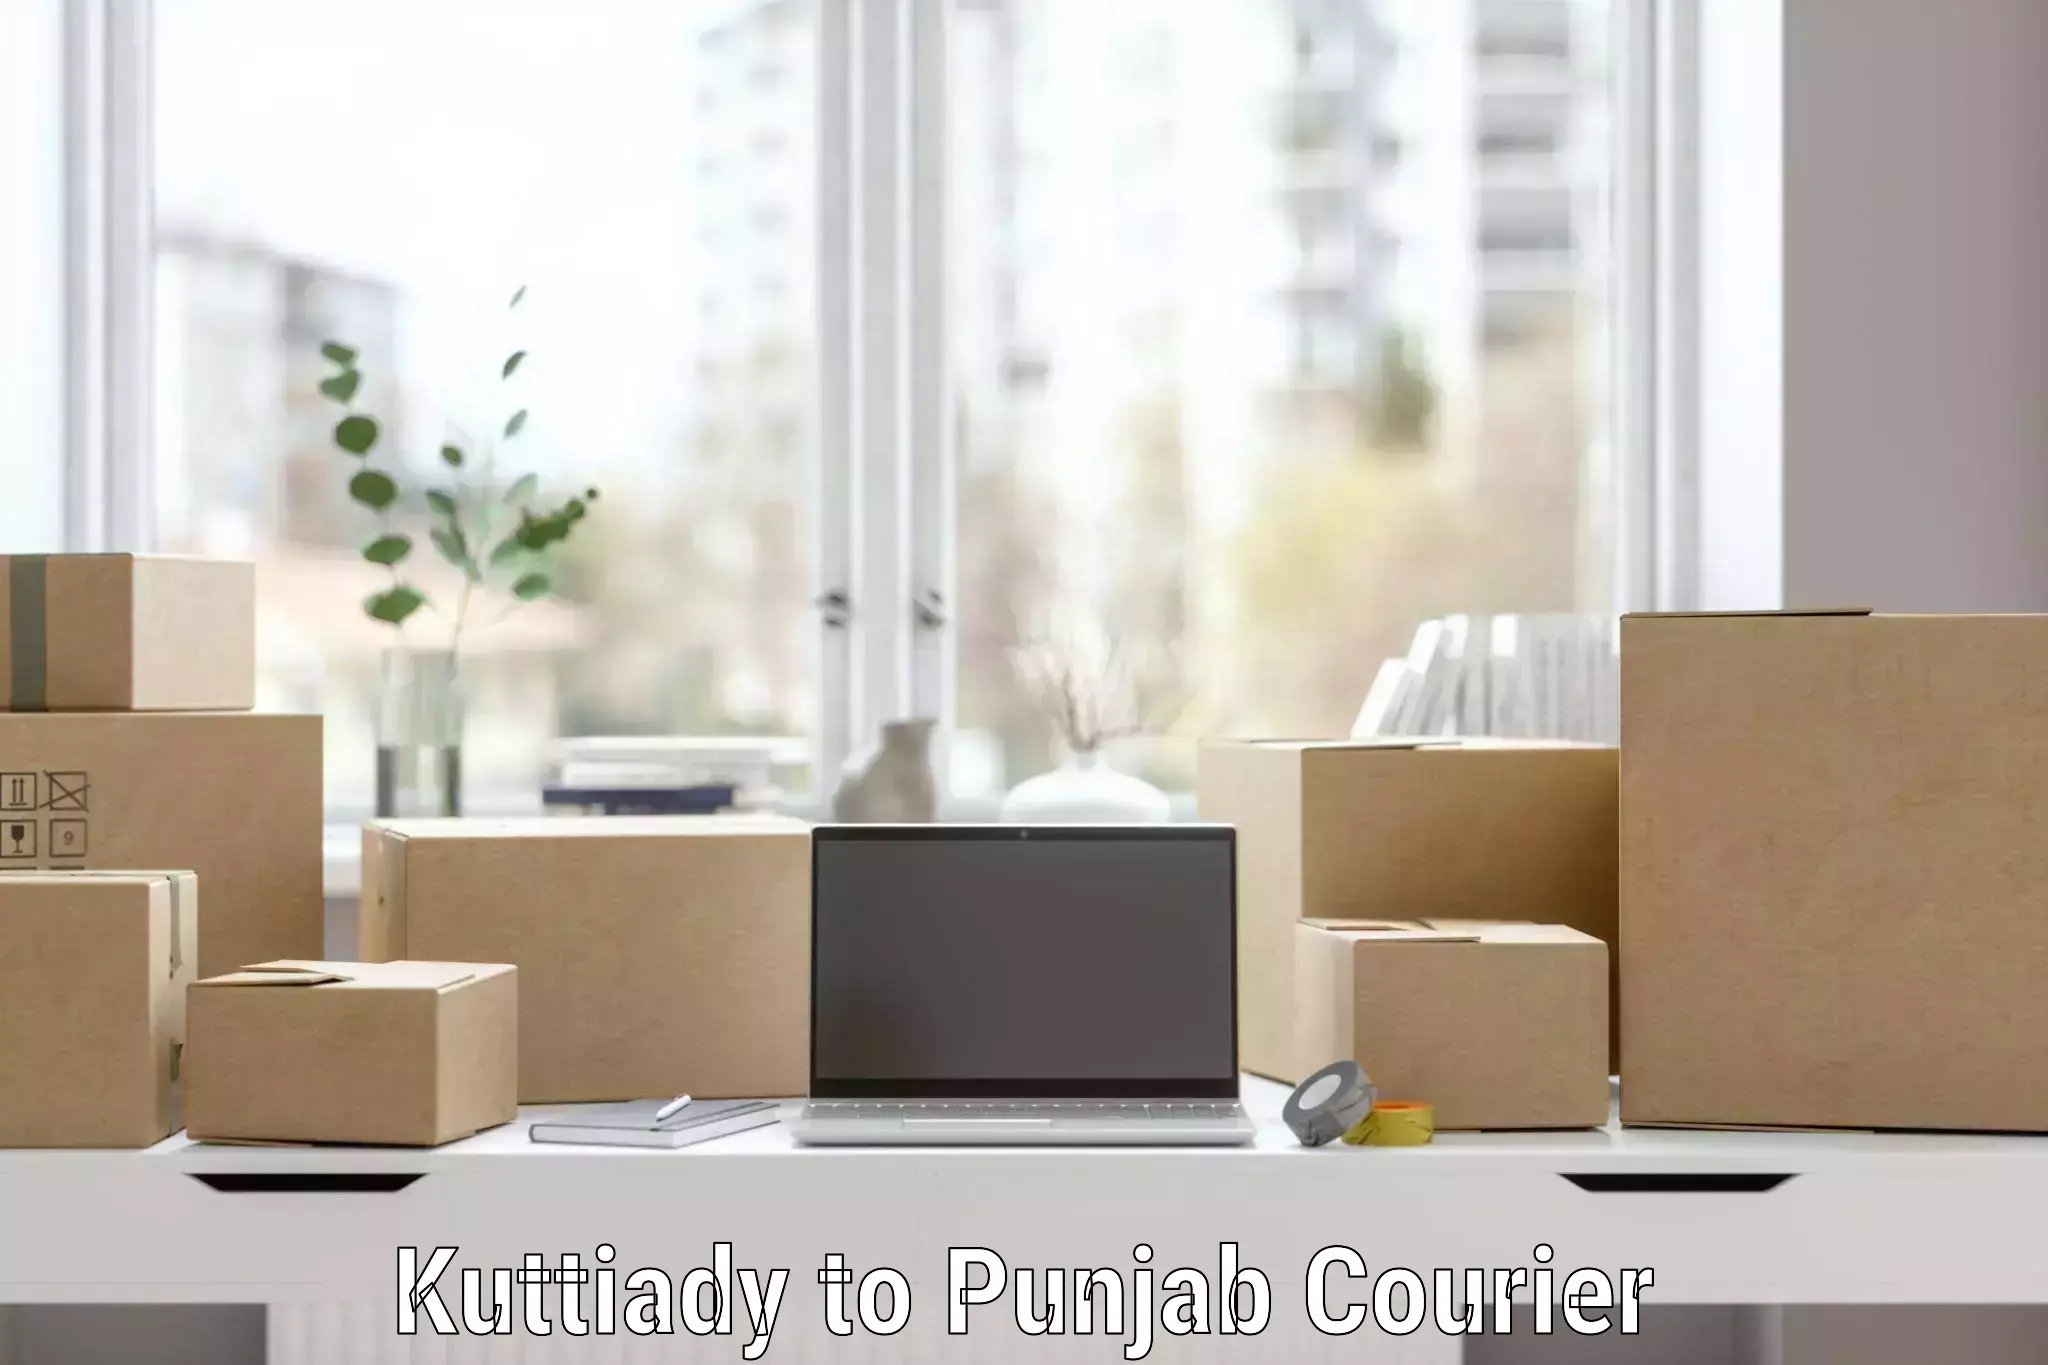 Professional furniture moving Kuttiady to Punjab